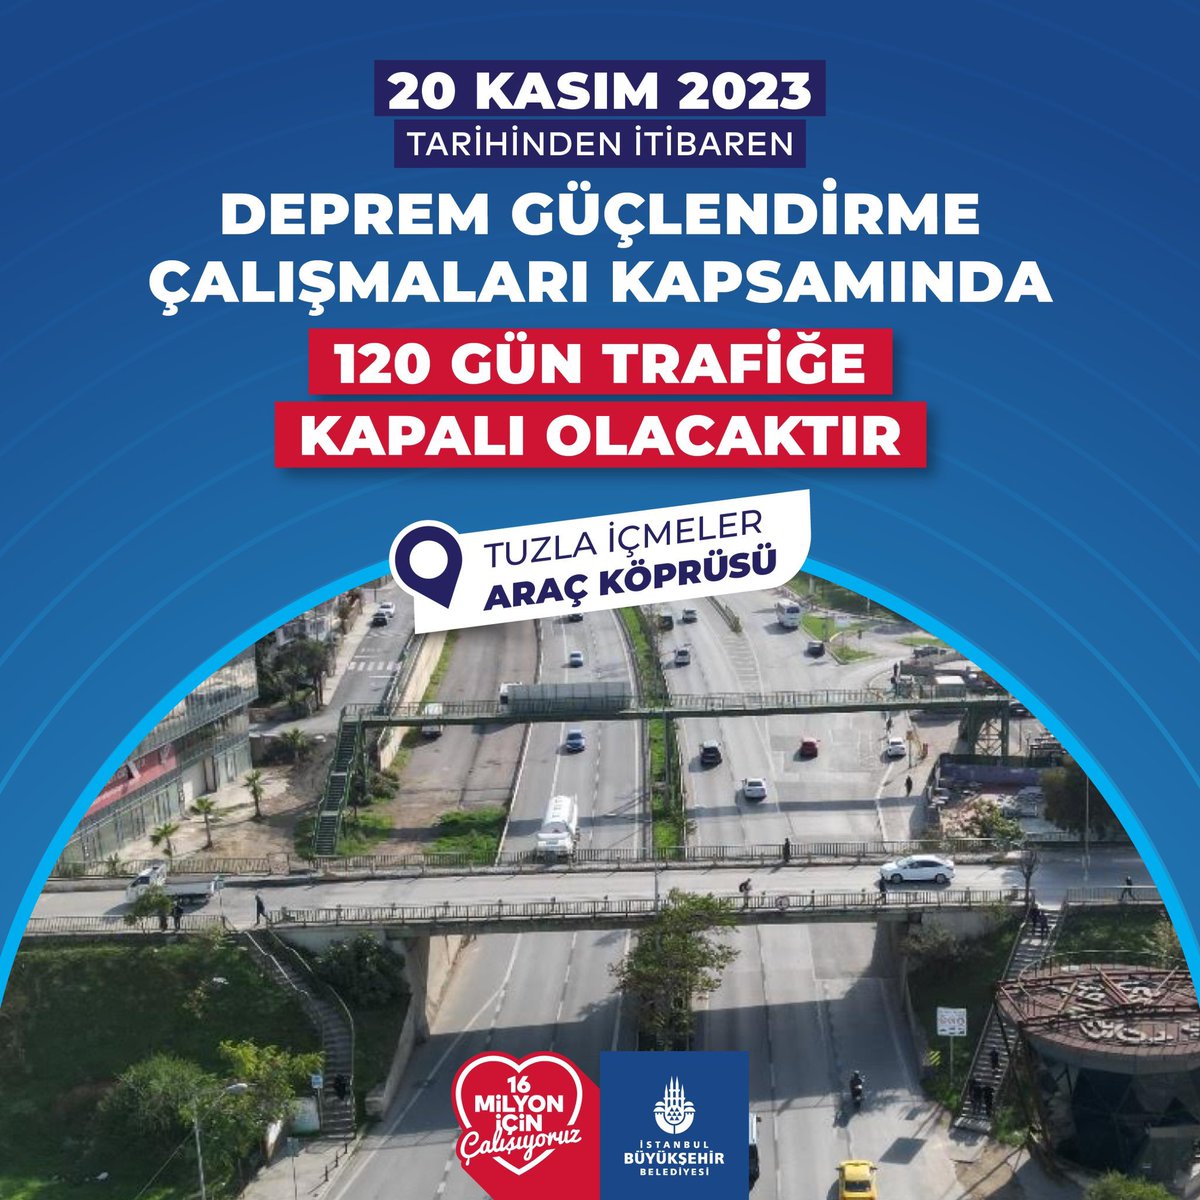 Önemli Duyuru.❗️

Tuzla İçmeler Araç Köprüsü, deprem güçlendirme çalışmalarımız kapsamında 120 gün trafiğe kapalı olacaktır.

#istanbulbüyükşehirbelediyesi #ibb #tuzla #içmeler